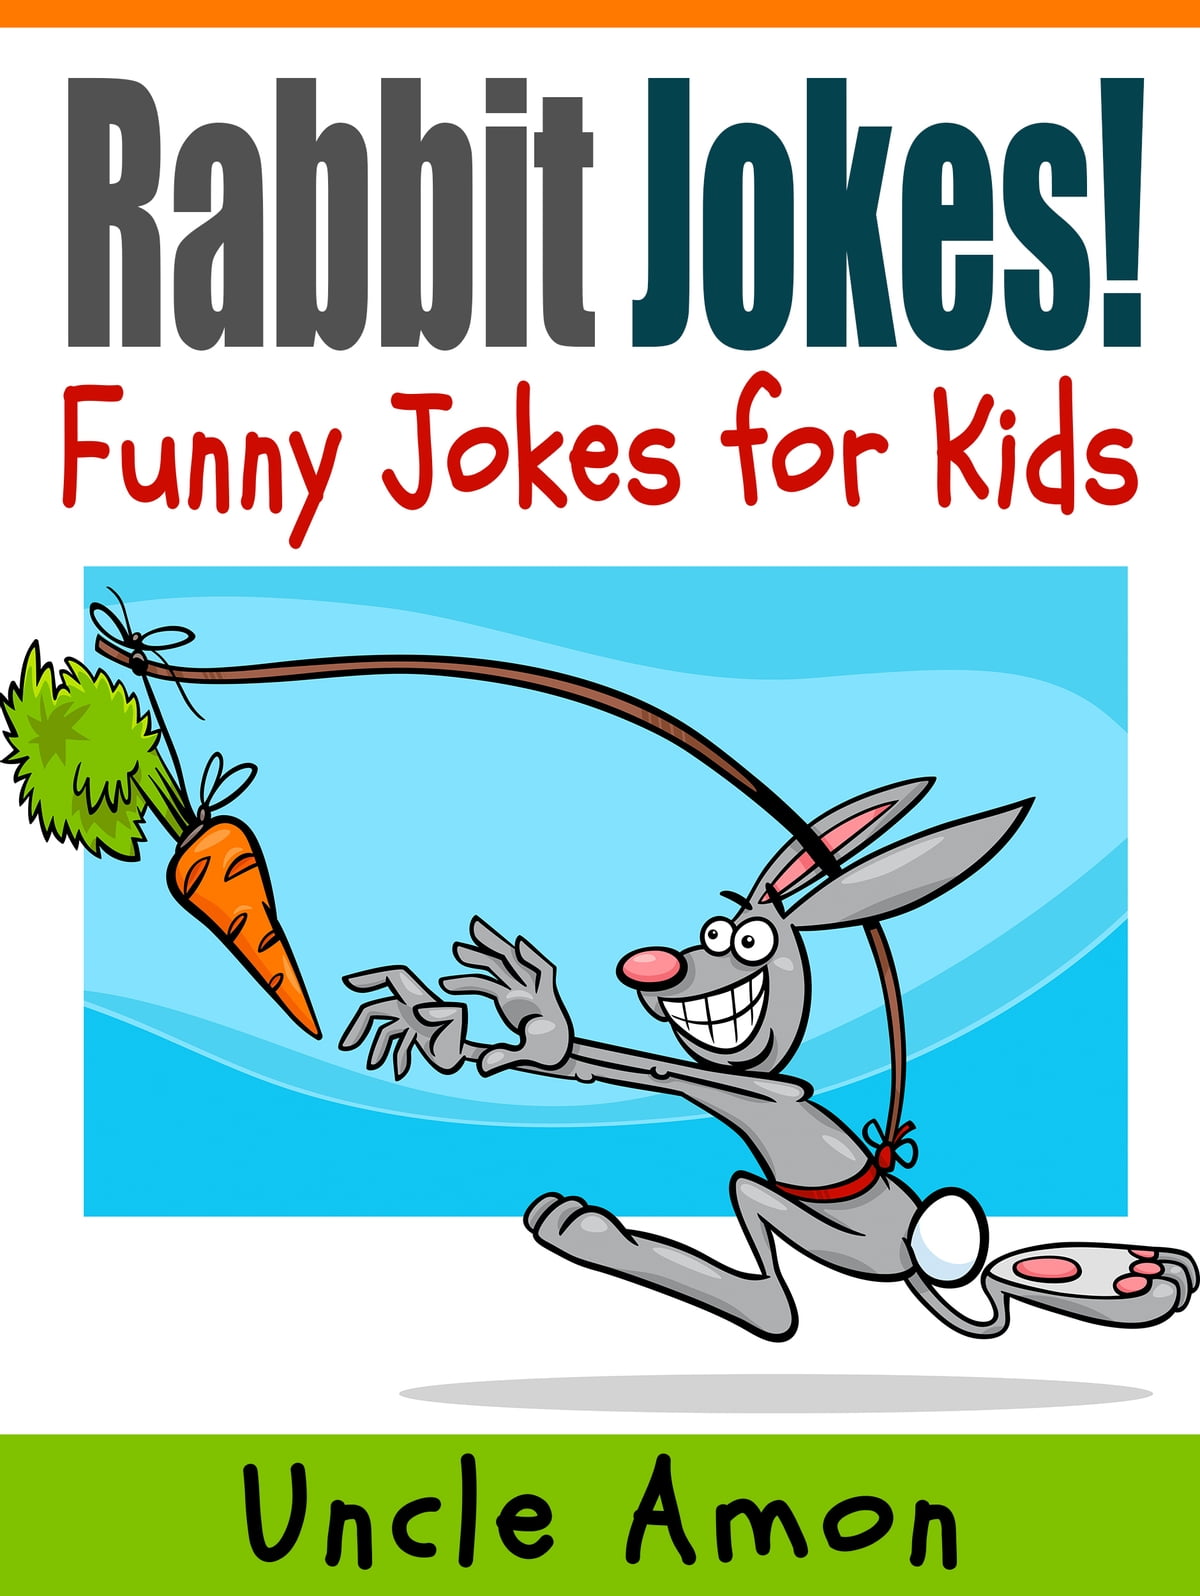 بچوں کے لیے لطیفے: خرگوش اور خرگوش کے لطیفوں کی بڑی فہرست